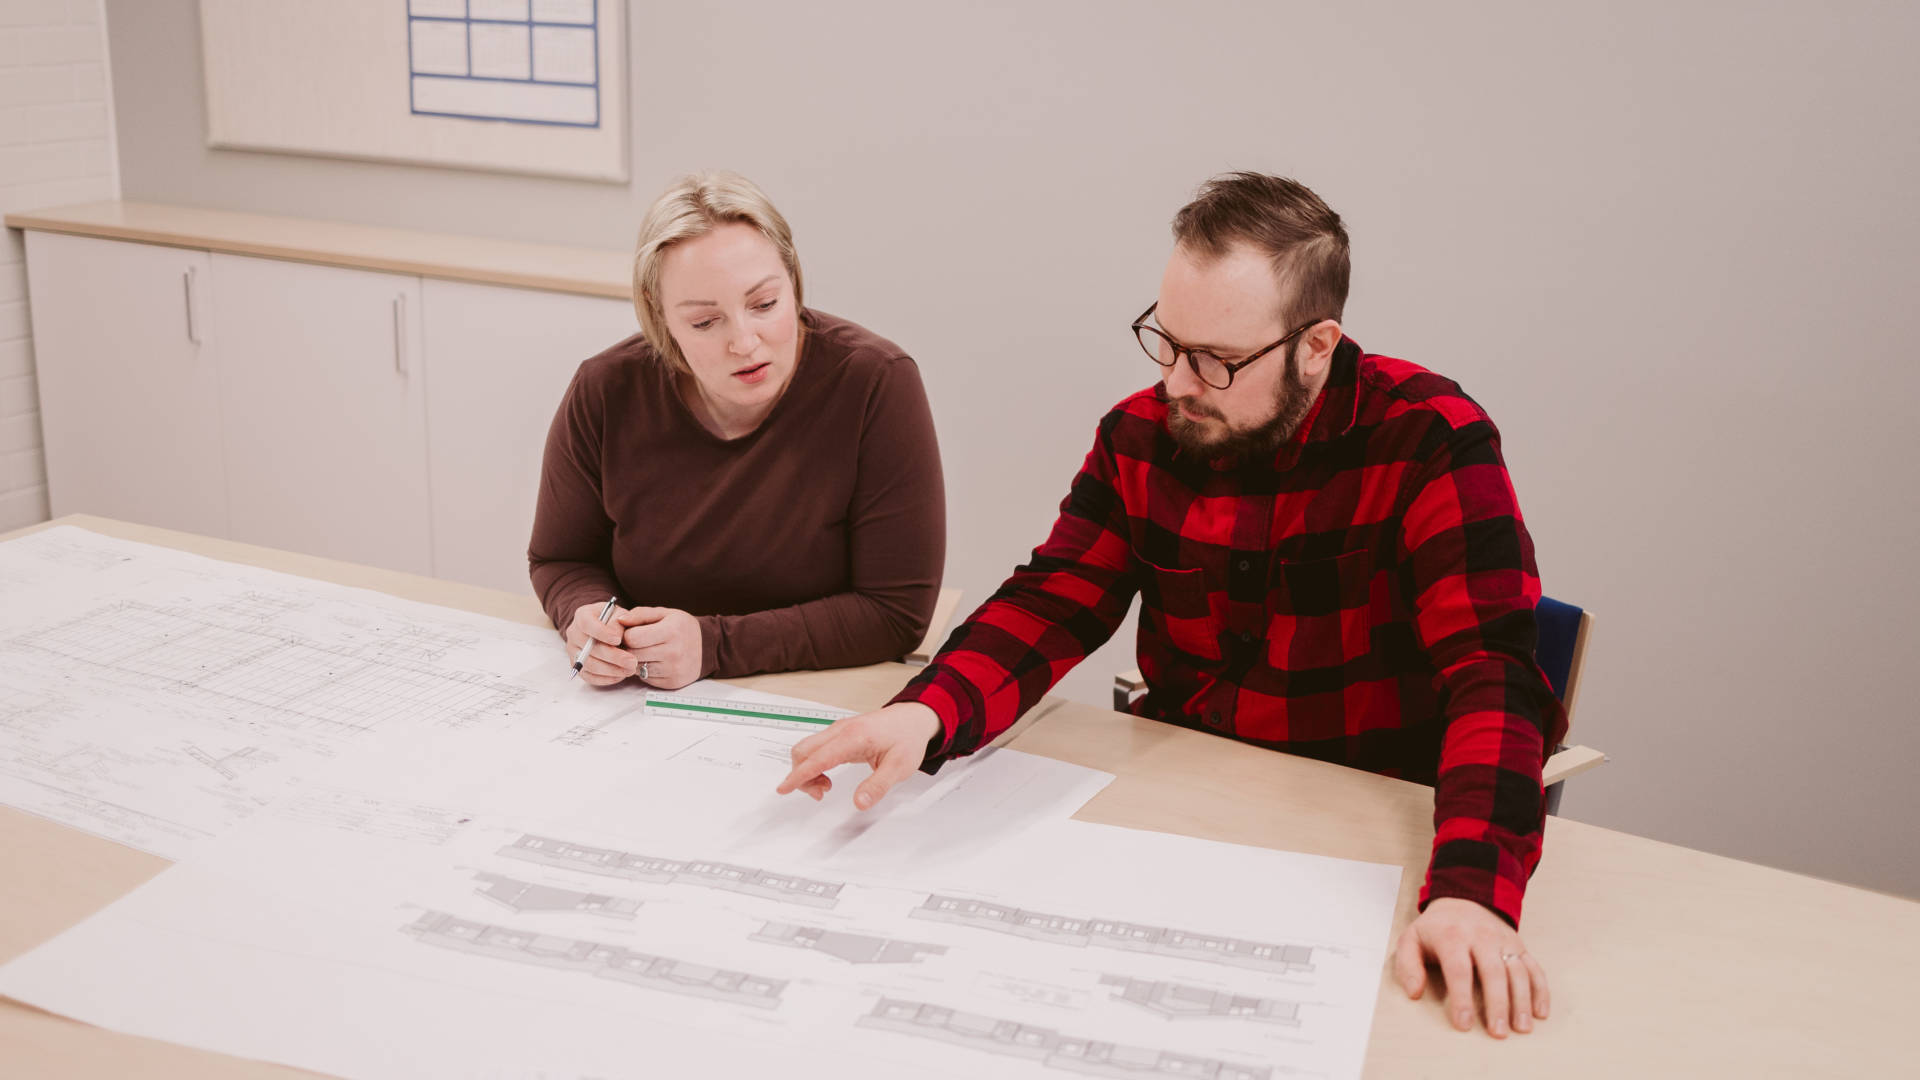 Kaksi teknisen suunnittelun opiskelijaa tutkivat yhdessä rakennuksen piirustuksia yhdessä pöydän ääressä.